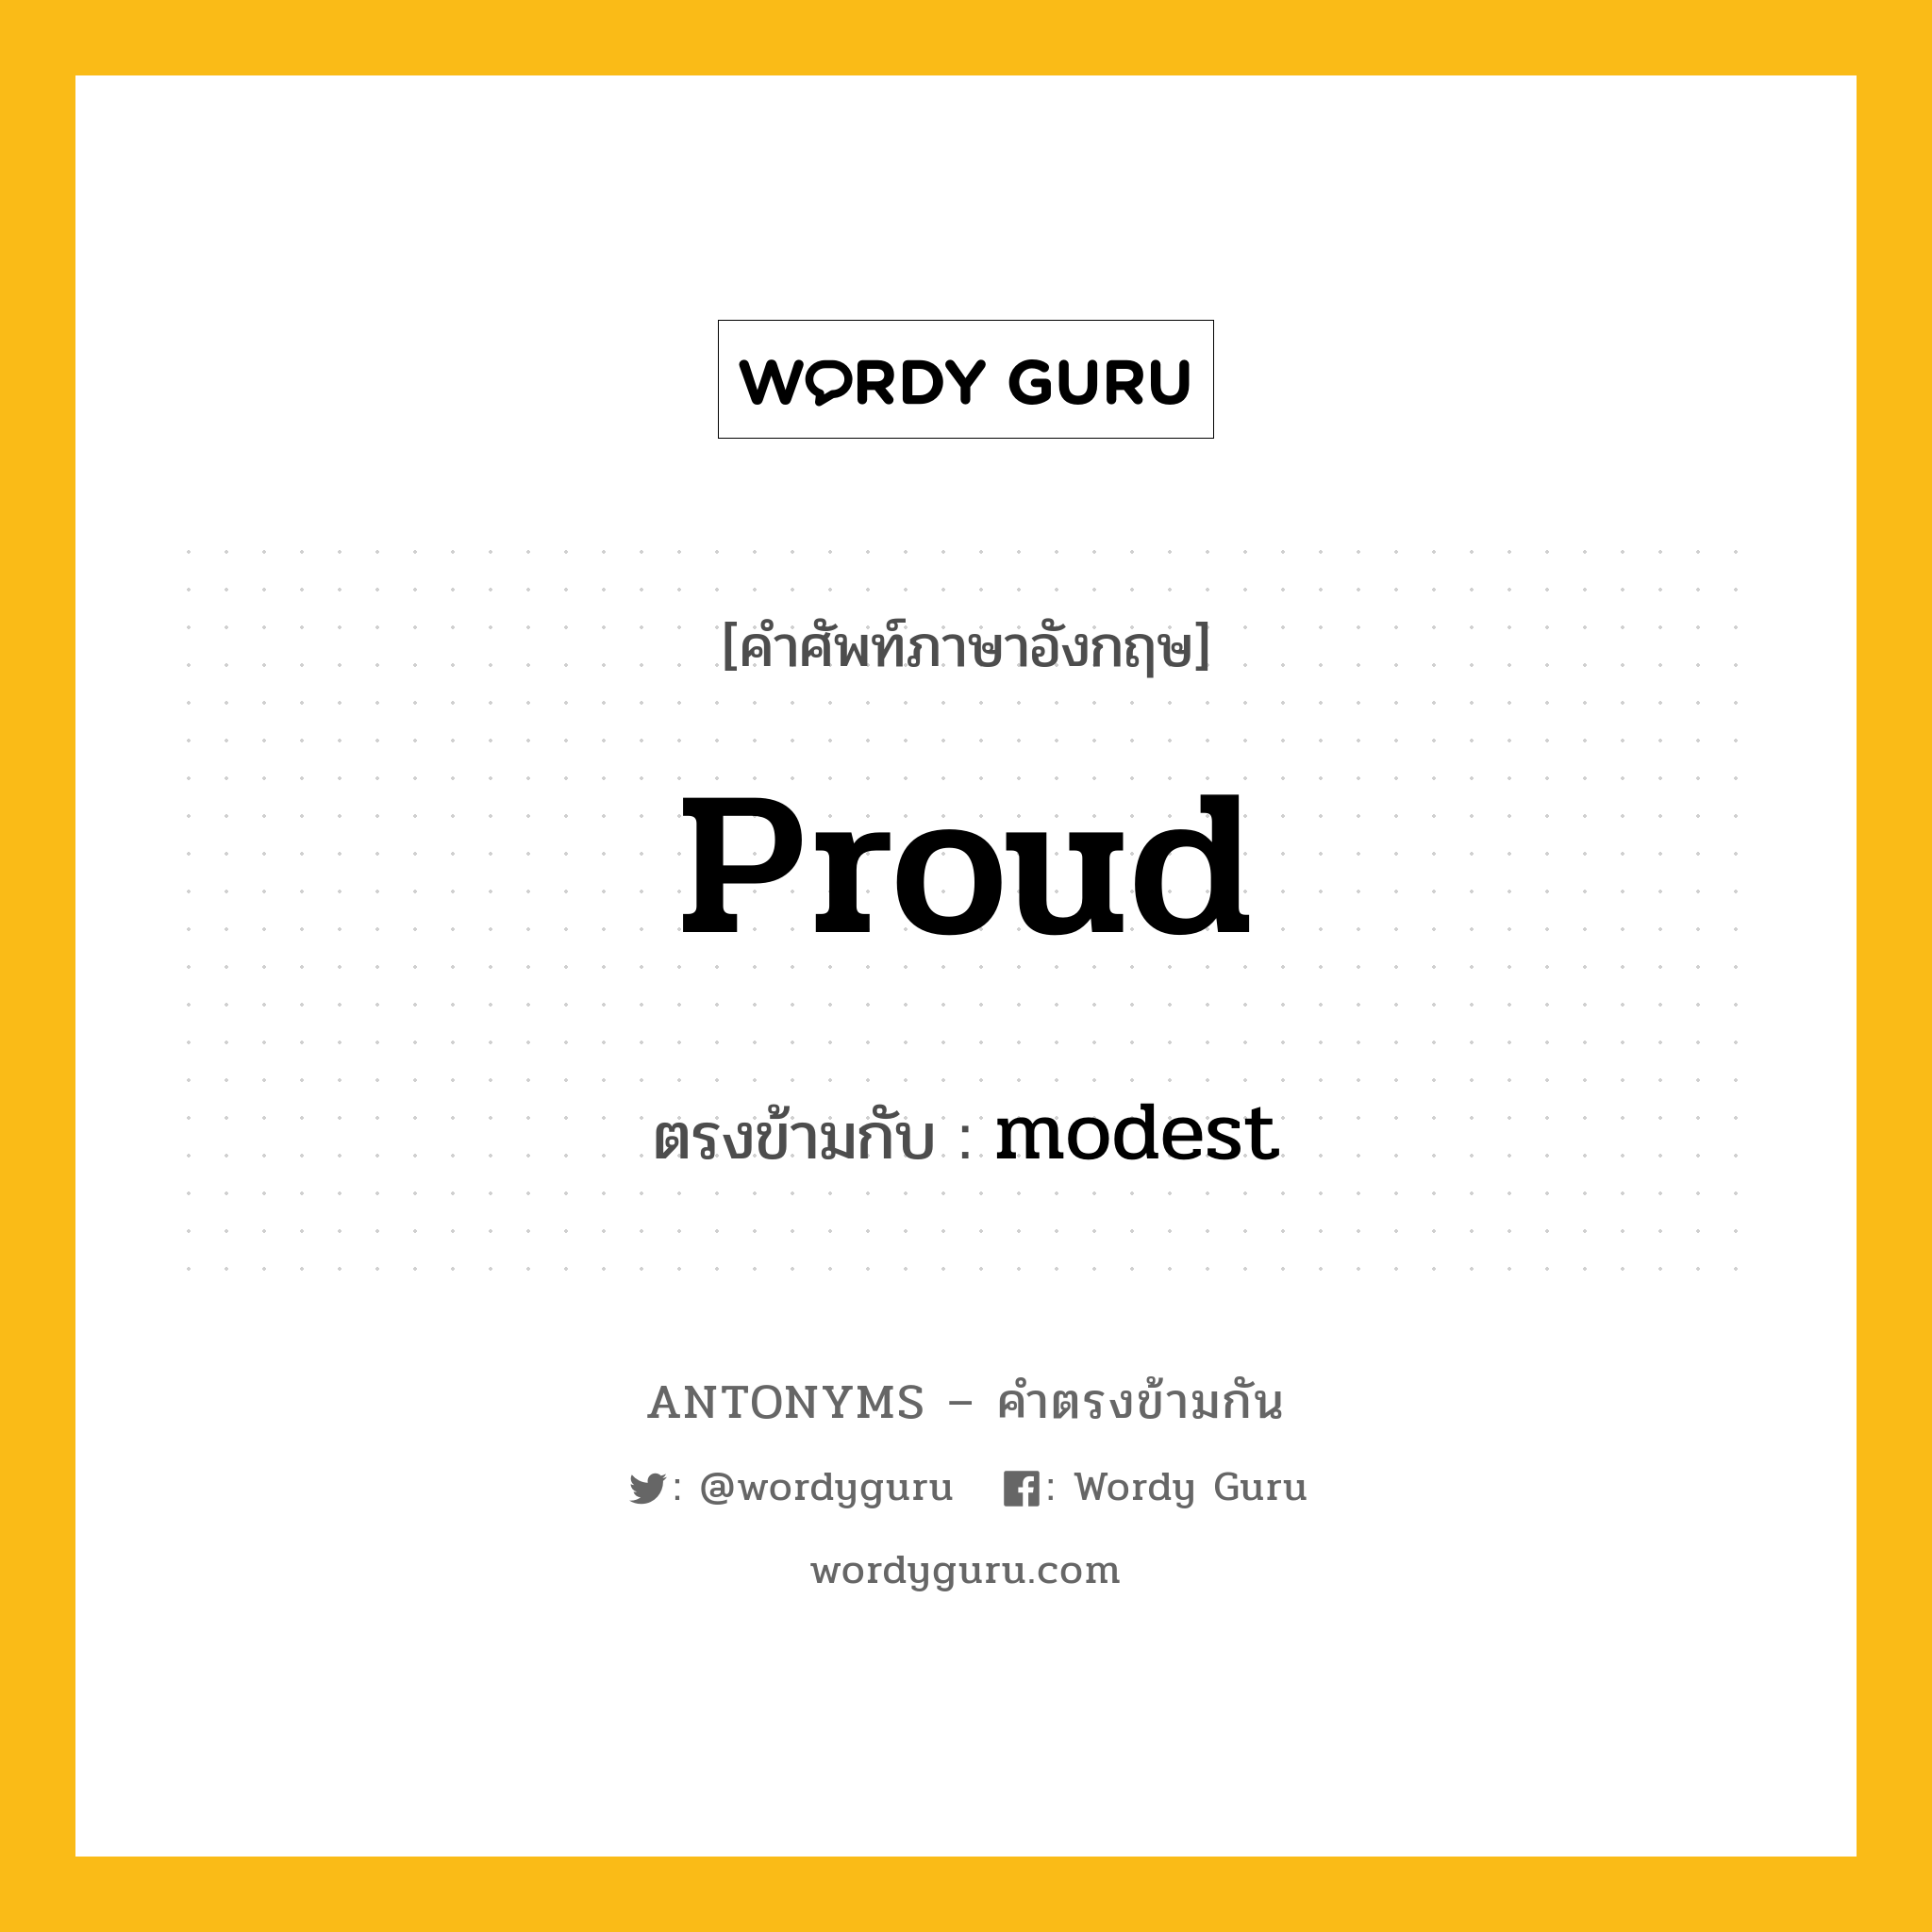 proud เป็นคำตรงข้ามกับคำไหนบ้าง?, คำศัพท์ภาษาอังกฤษ proud ตรงข้ามกับ modest หมวด modest